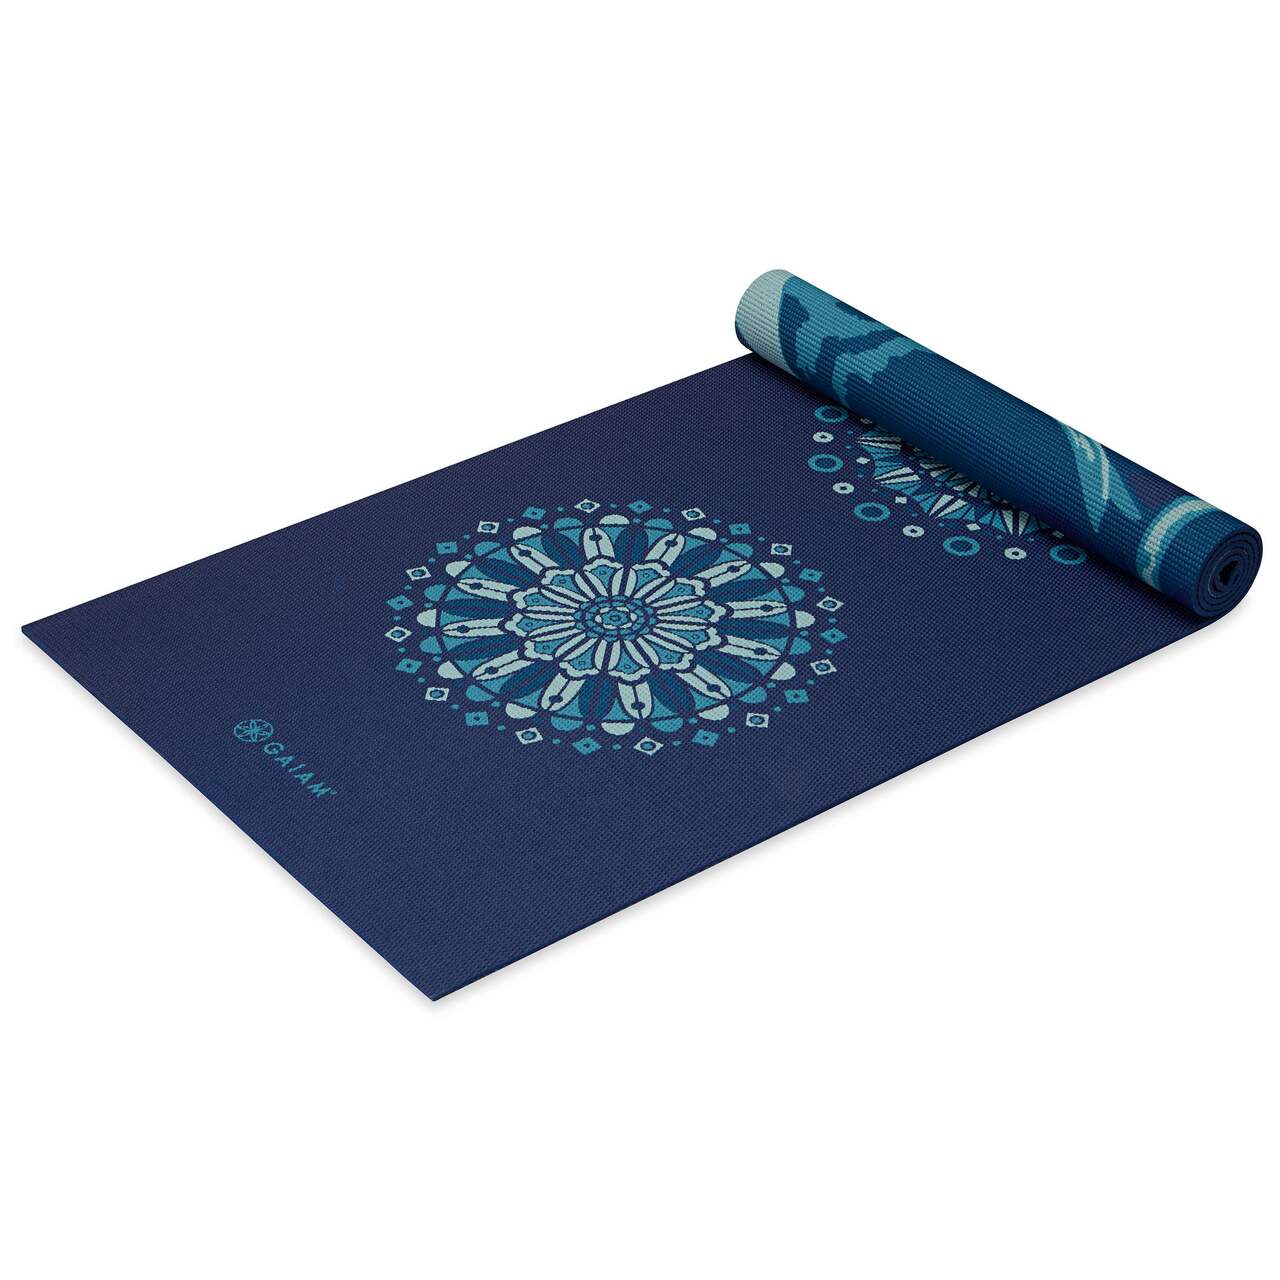 Wholesale - Gaiam Premium Radiance Yoga Mat 6mm – Yoga Studio